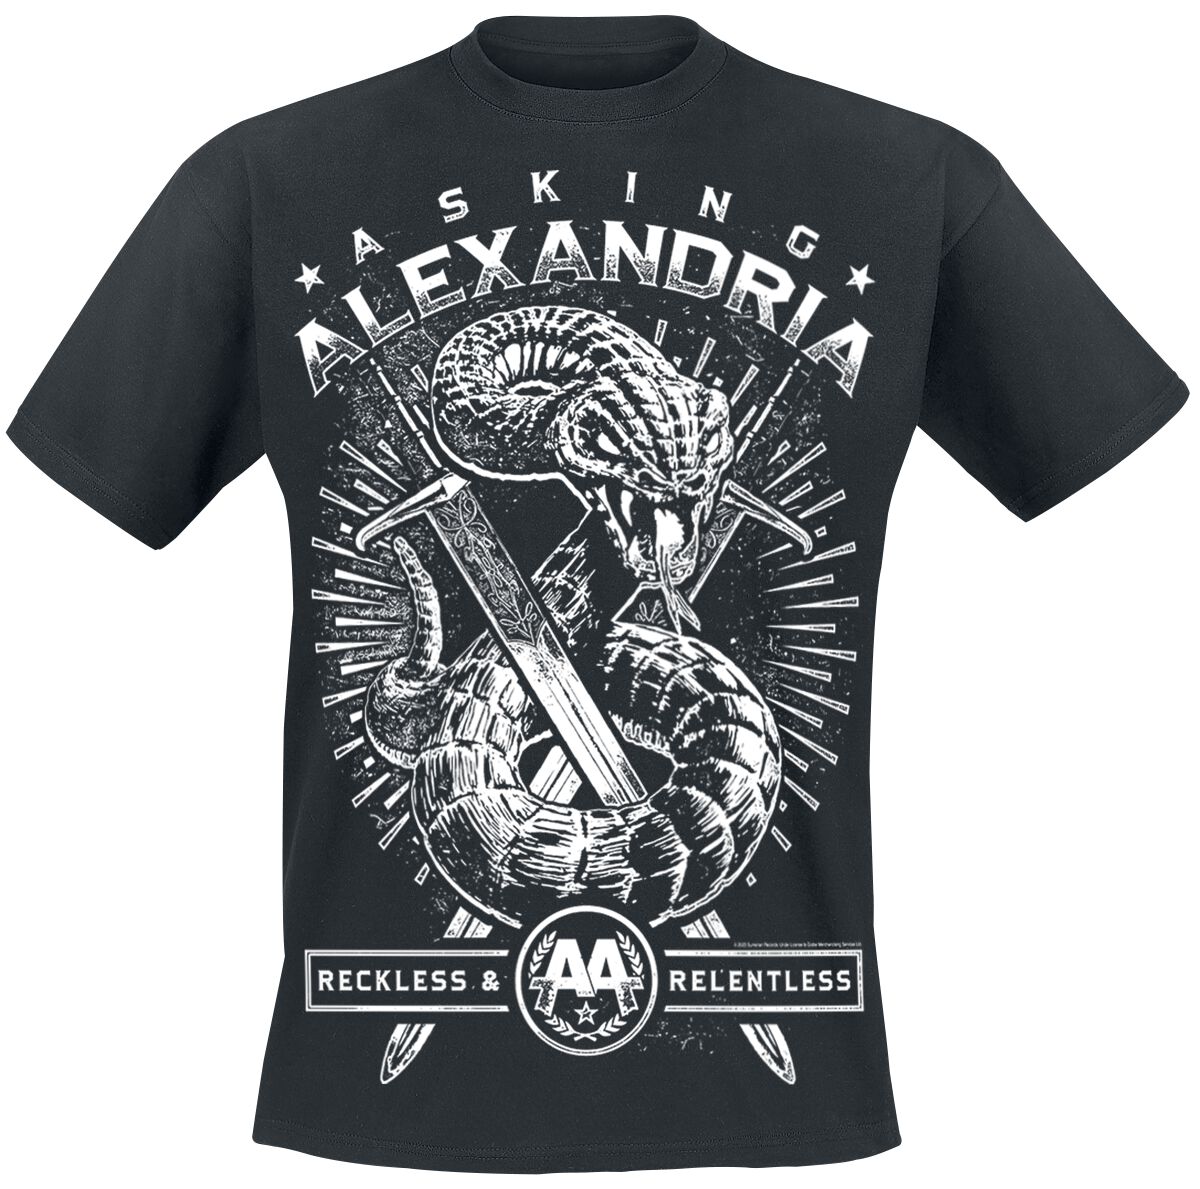 Asking Alexandria T-Shirt - Snake - S bis XXL - für Männer - Größe S - schwarz  - Lizenziertes Merchandise! von Asking Alexandria